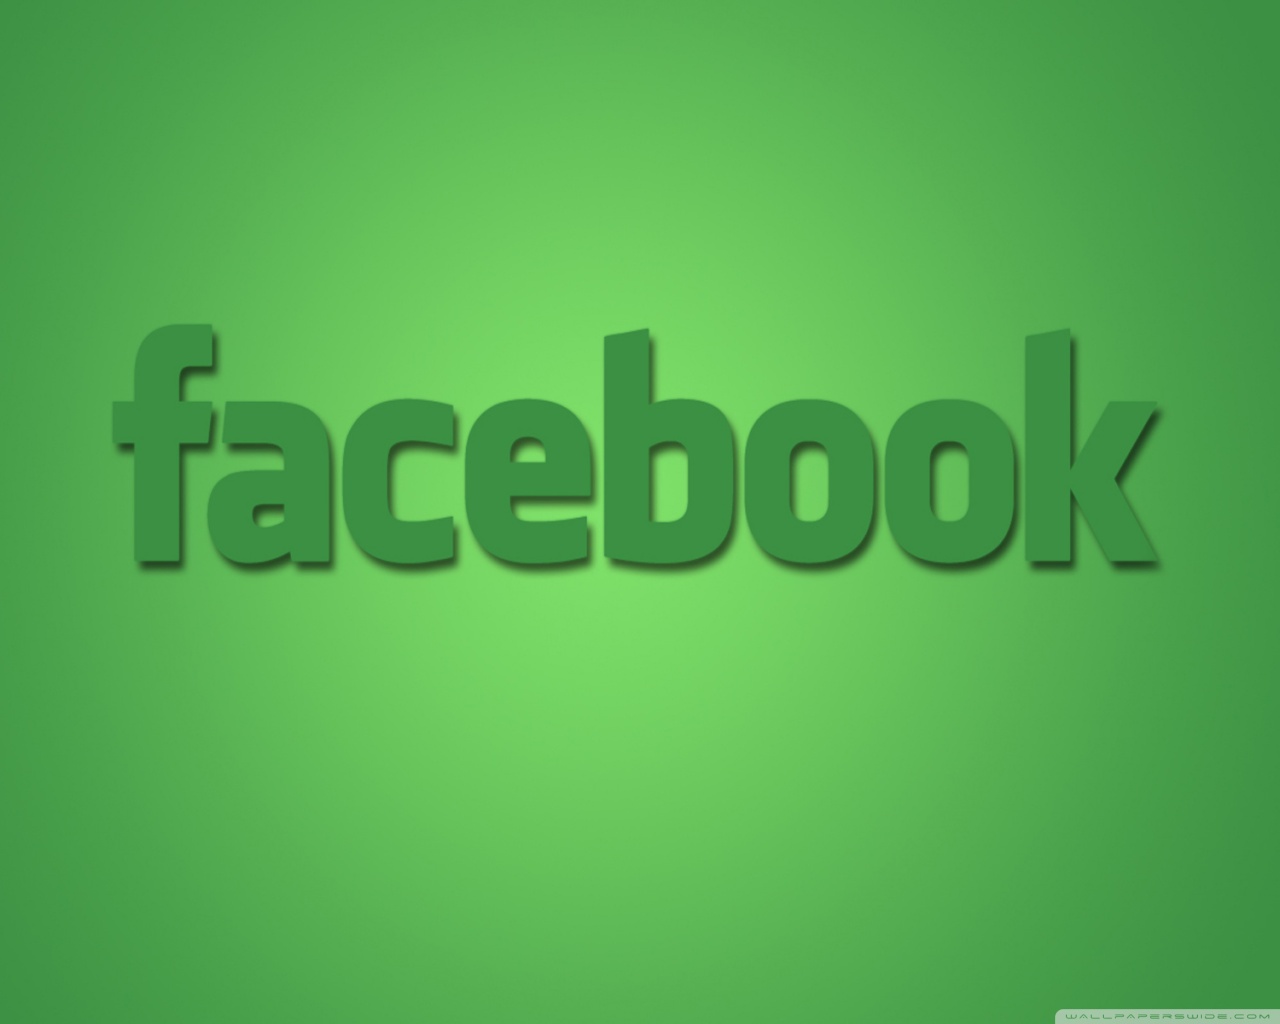 facebook wallpaper,green,text,font,logo,brand